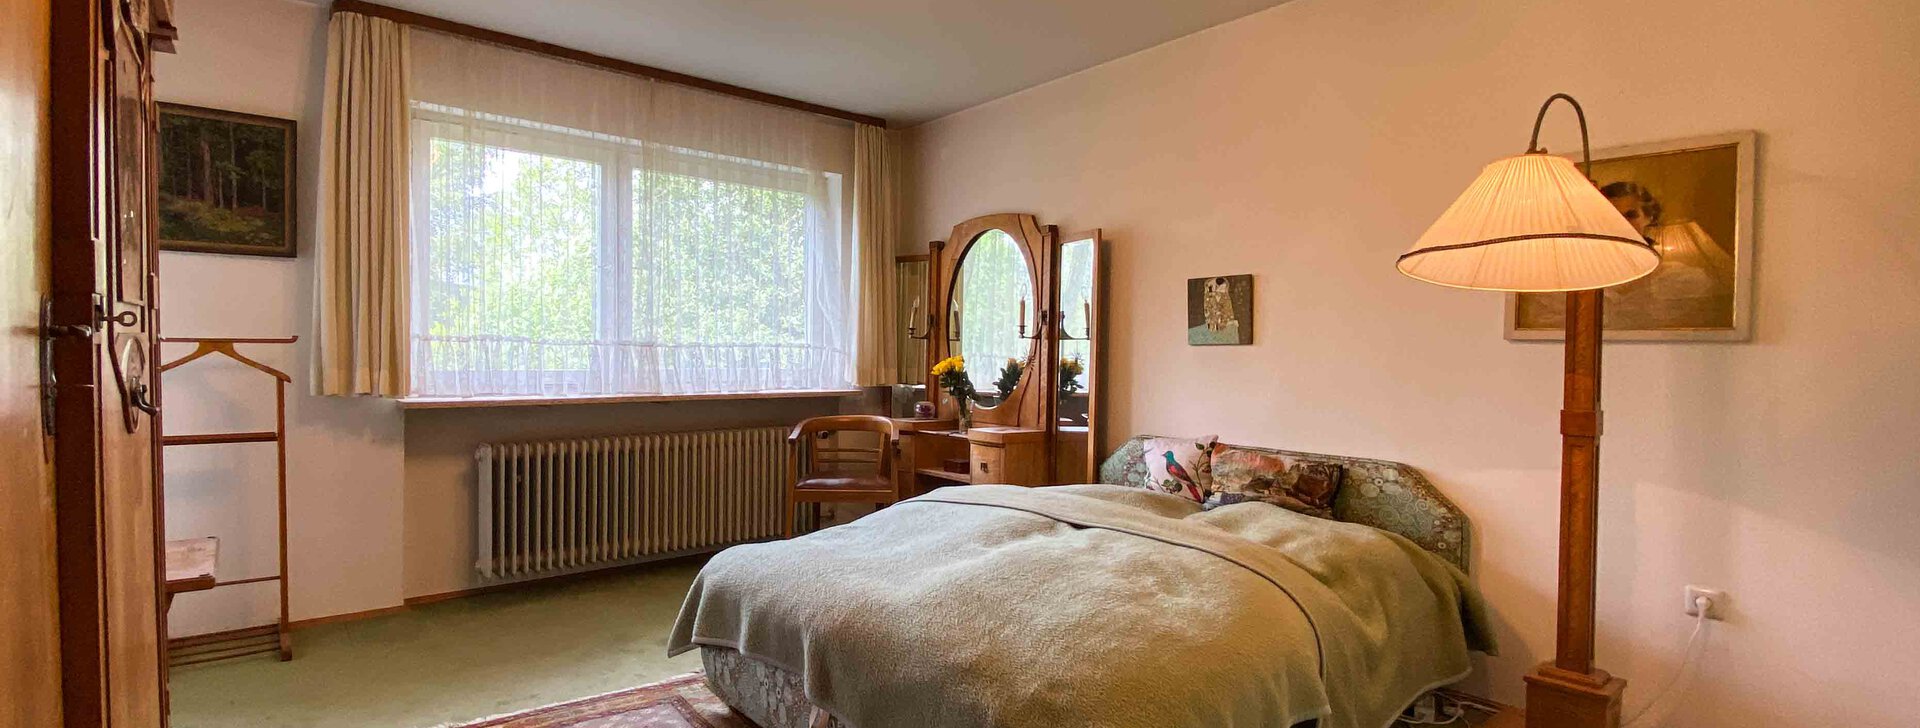 Schlafzimmer, Grundstück mit Einfamilienhaus, Immobilie kaufen, Raubling  | © HausBauHaus GmbH 